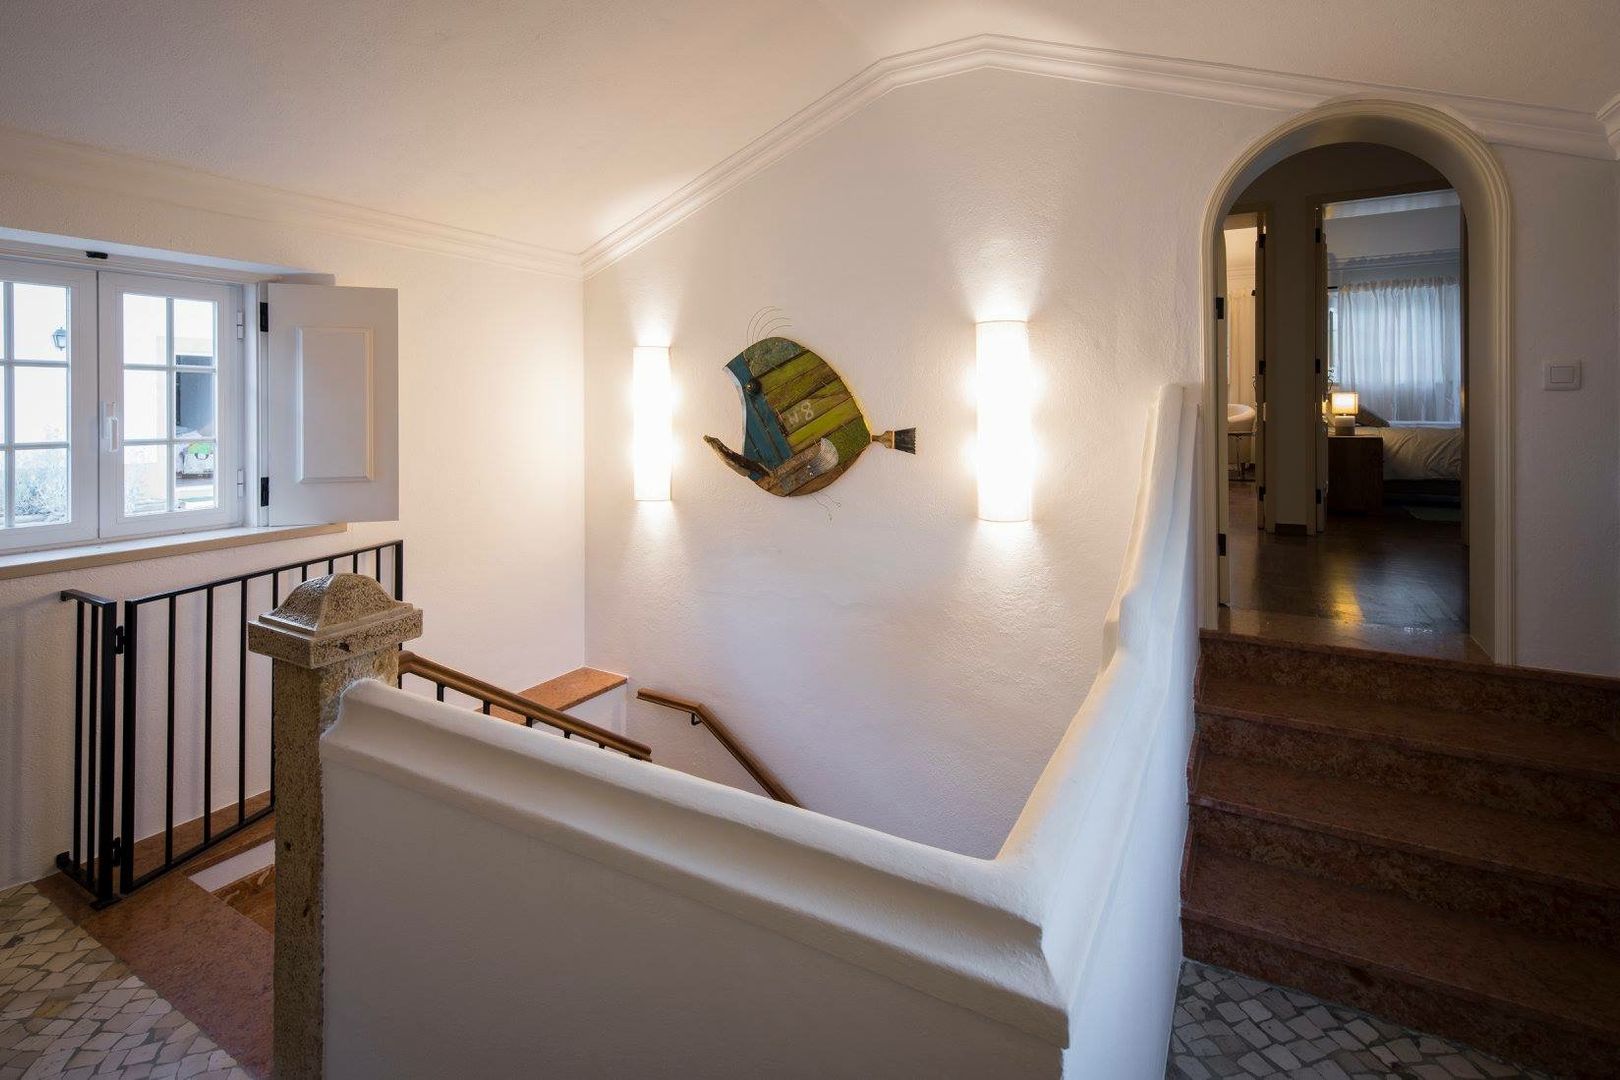 projeto de decoração de um alojamento local em Sintra - Quinta do Pé Descalço, Officina Boarotto Officina Boarotto Corredores, halls e escadas rústicos